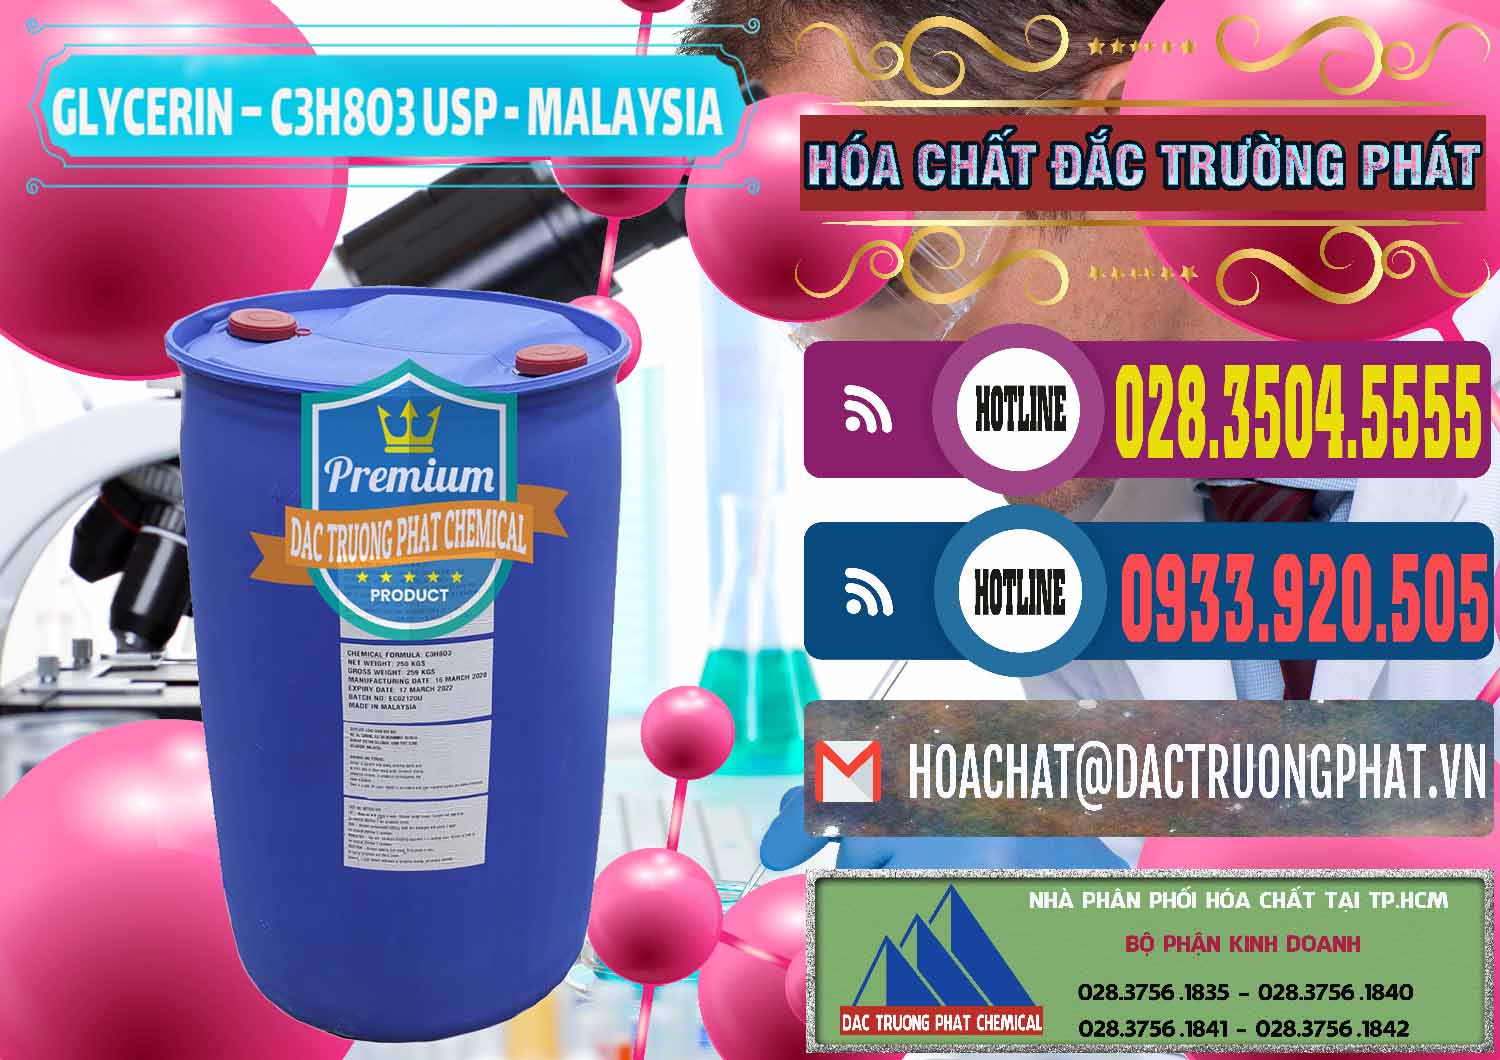 Chuyên kinh doanh _ bán Glycerin – C3H8O3 USP Malaysia - 0233 - Cty nhập khẩu ( cung cấp ) hóa chất tại TP.HCM - muabanhoachat.com.vn